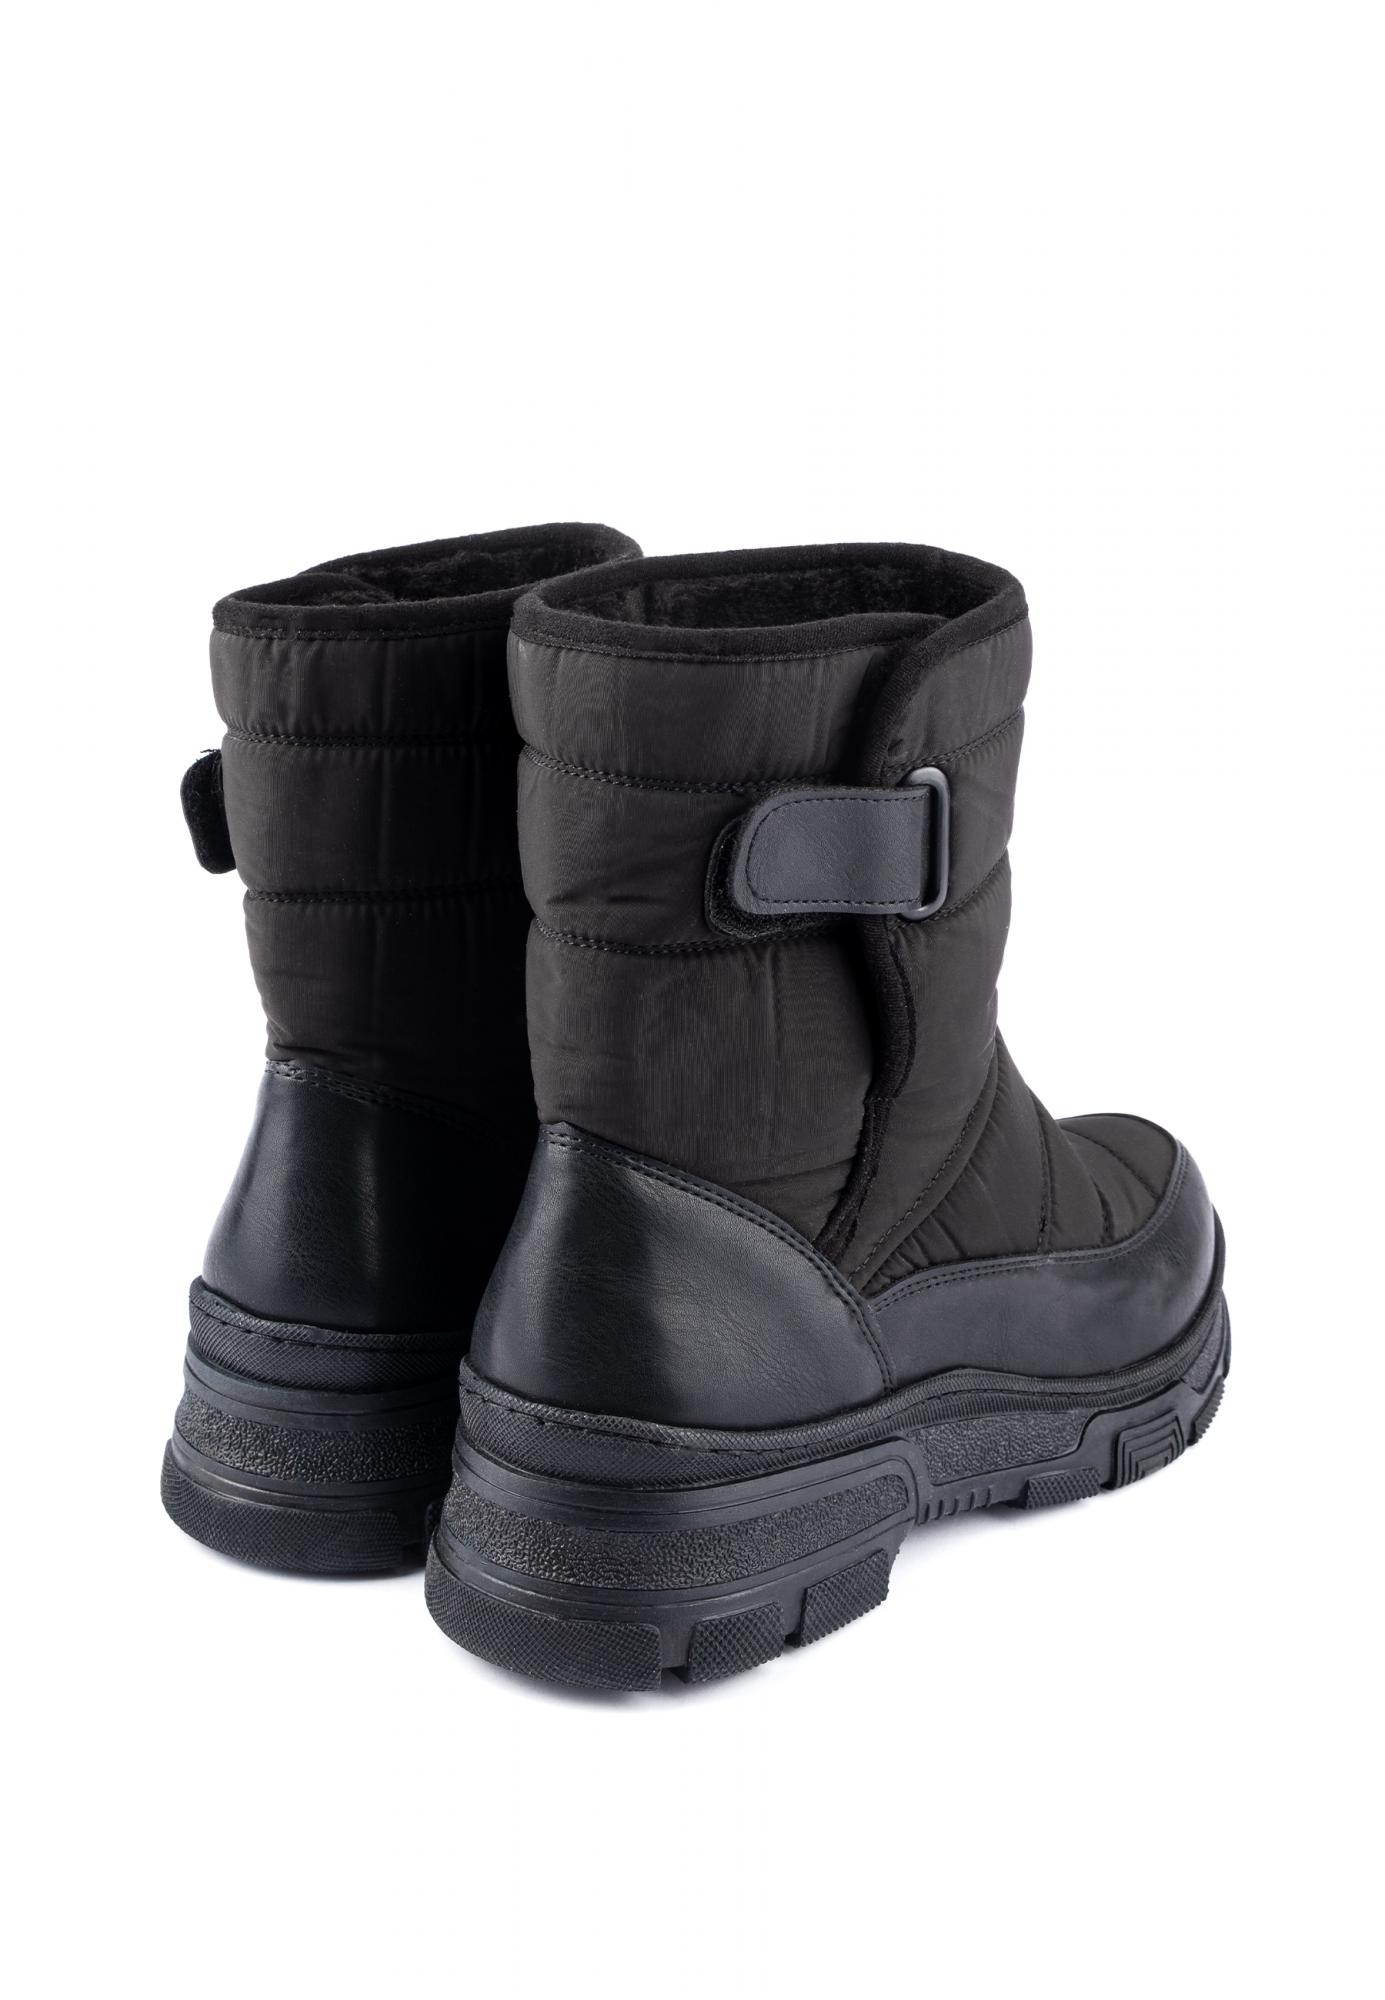 Warme Stiefel und Schuhe D430 - SCHWARZ